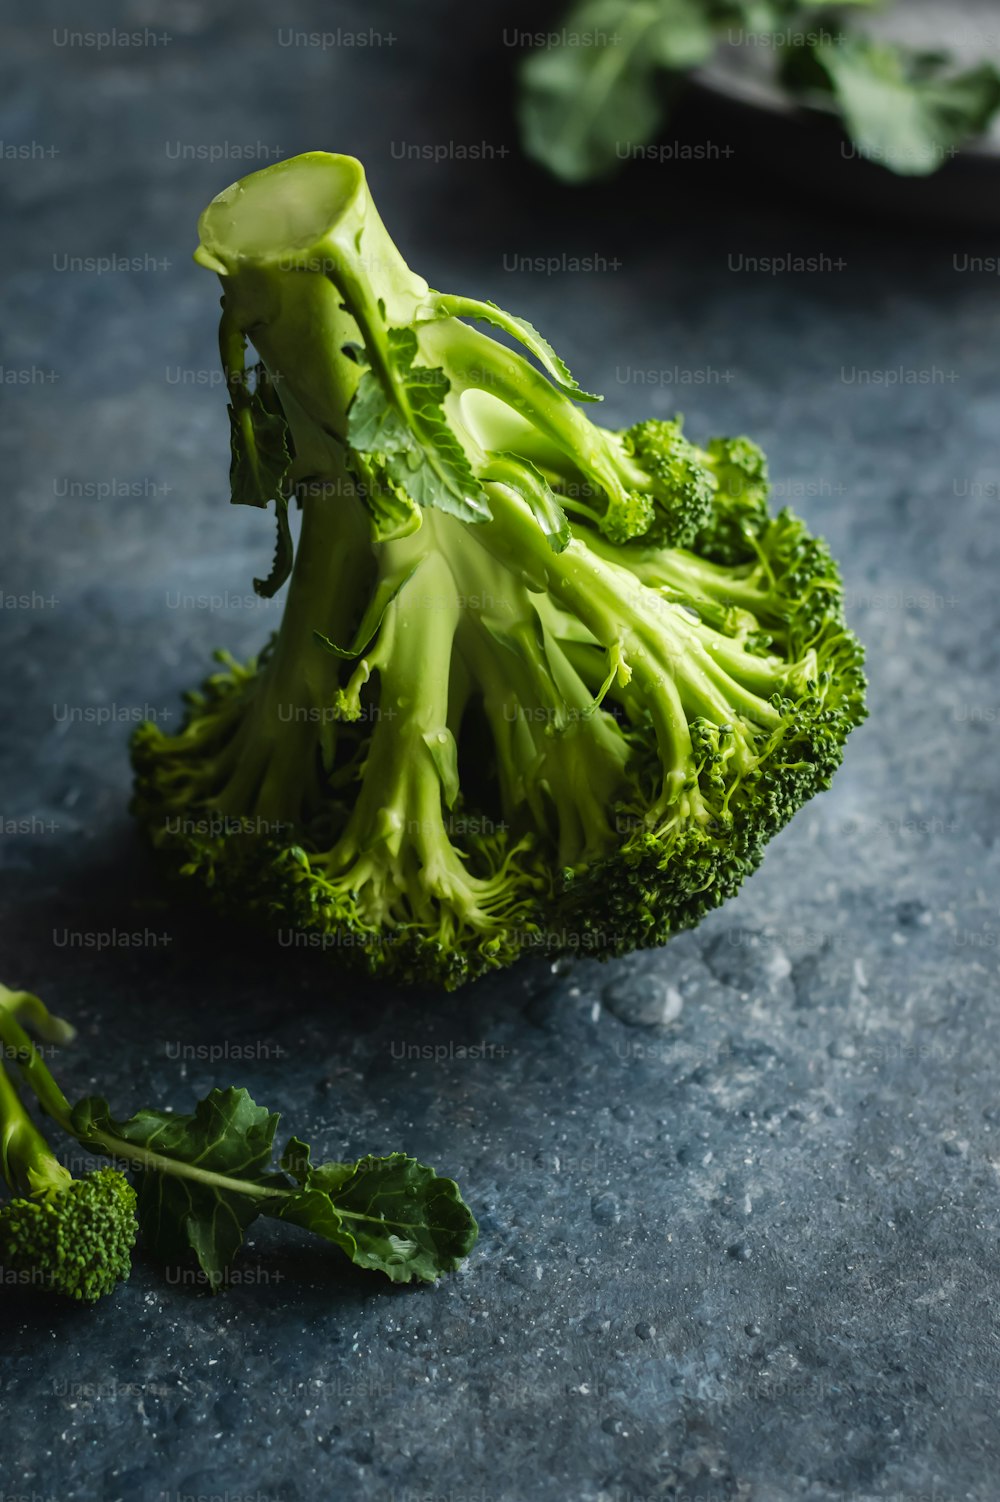 Un primer plano de un trozo de brócoli sobre una mesa